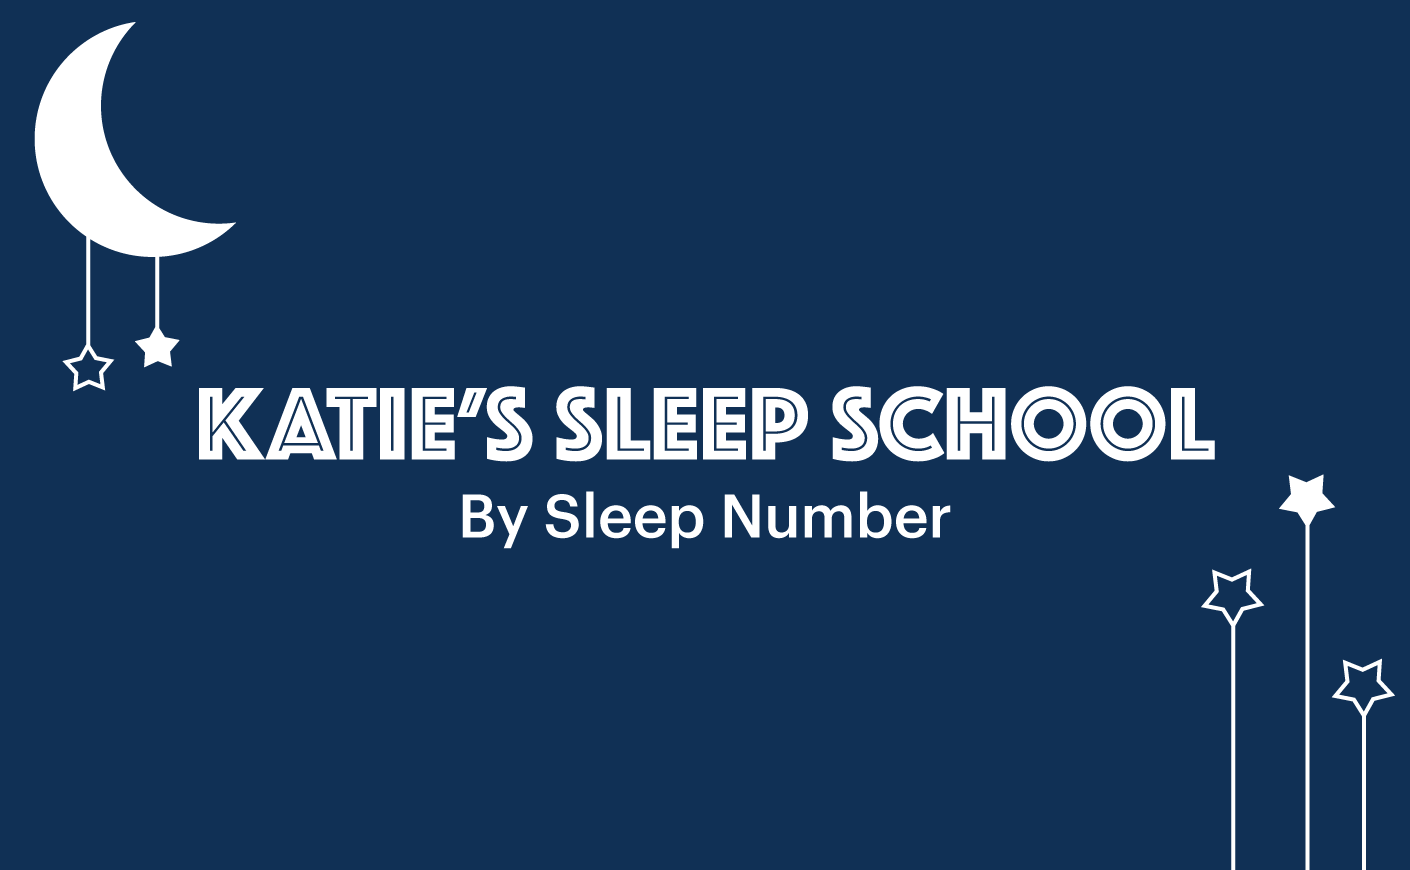 Katie's sleep school